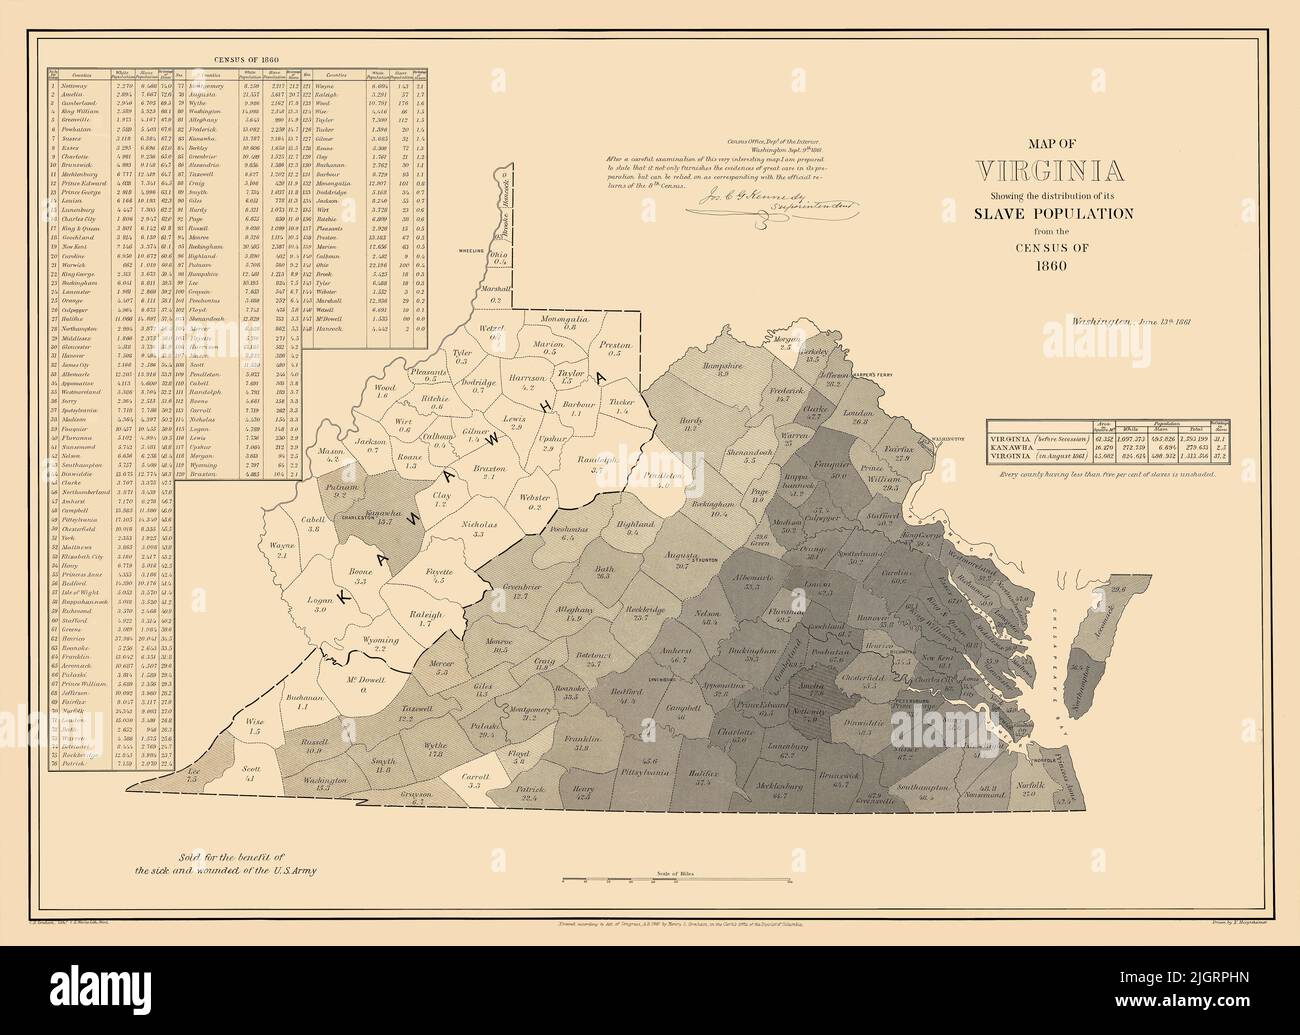 Riproduzioni restaurate e migliorate di una mappa antica del 1861. Titolo originale: Mappa della Virginia che mostra la distribuzione della sua popolazione schiava dal censimento del 1860. Mostra lo stato diviso in contee con la percentuale di schiavi in ogni contea. La Virginia occidentale è etichettata 'Kanawha', il nome dello stato proposto al momento. Foto Stock